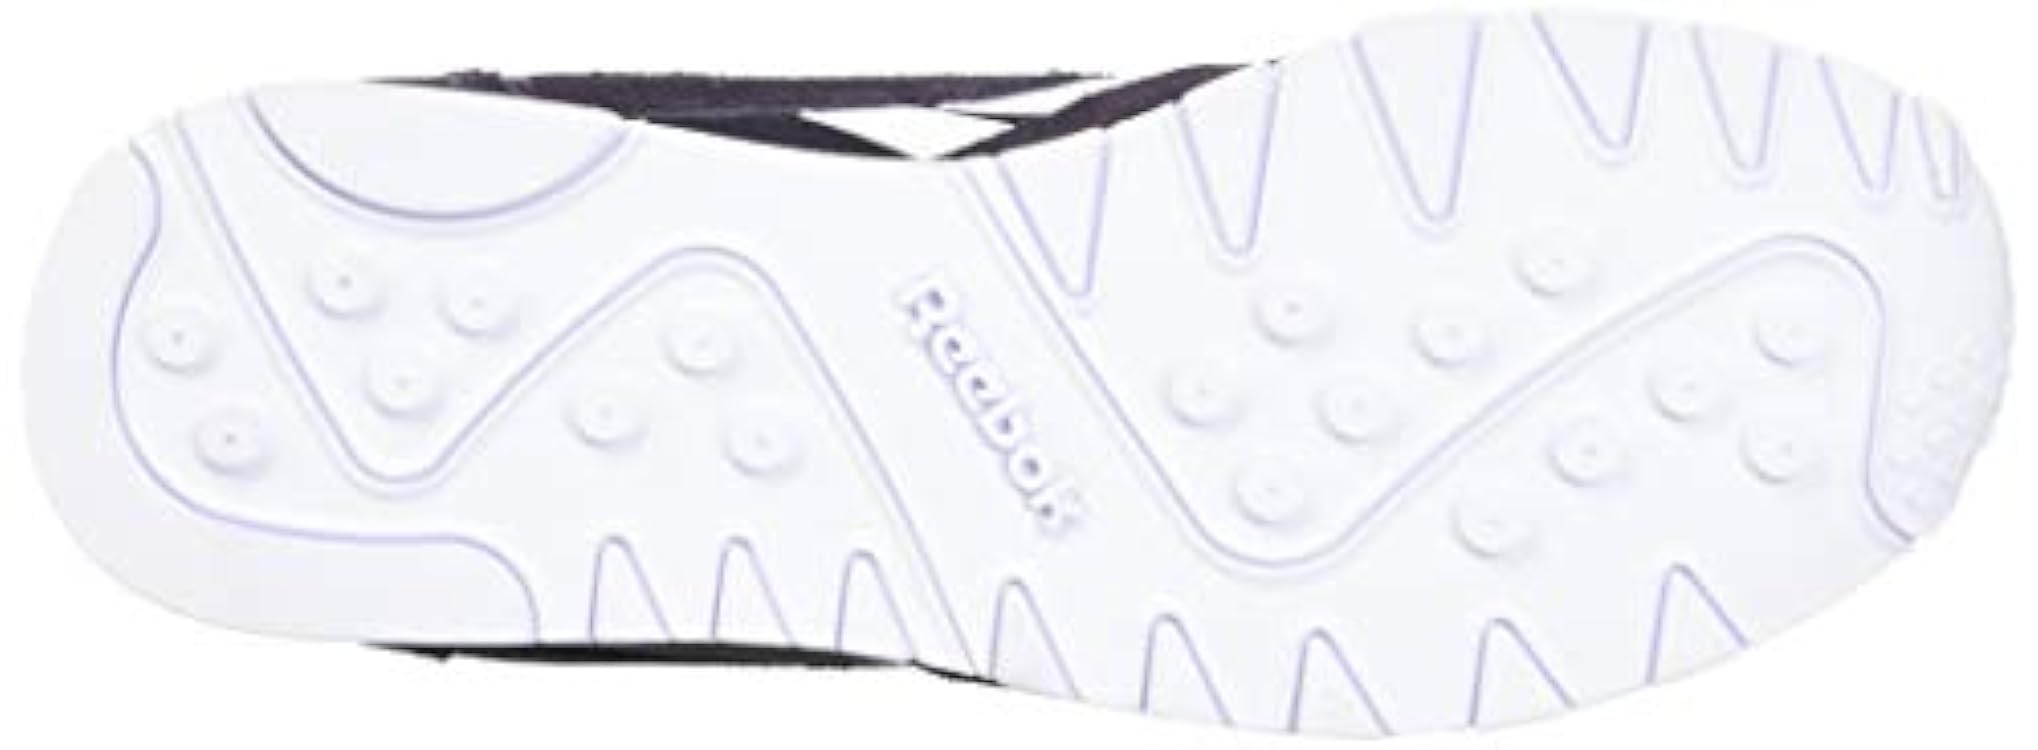 Reebok Women´s Classic Nylon Sneaker 605143667